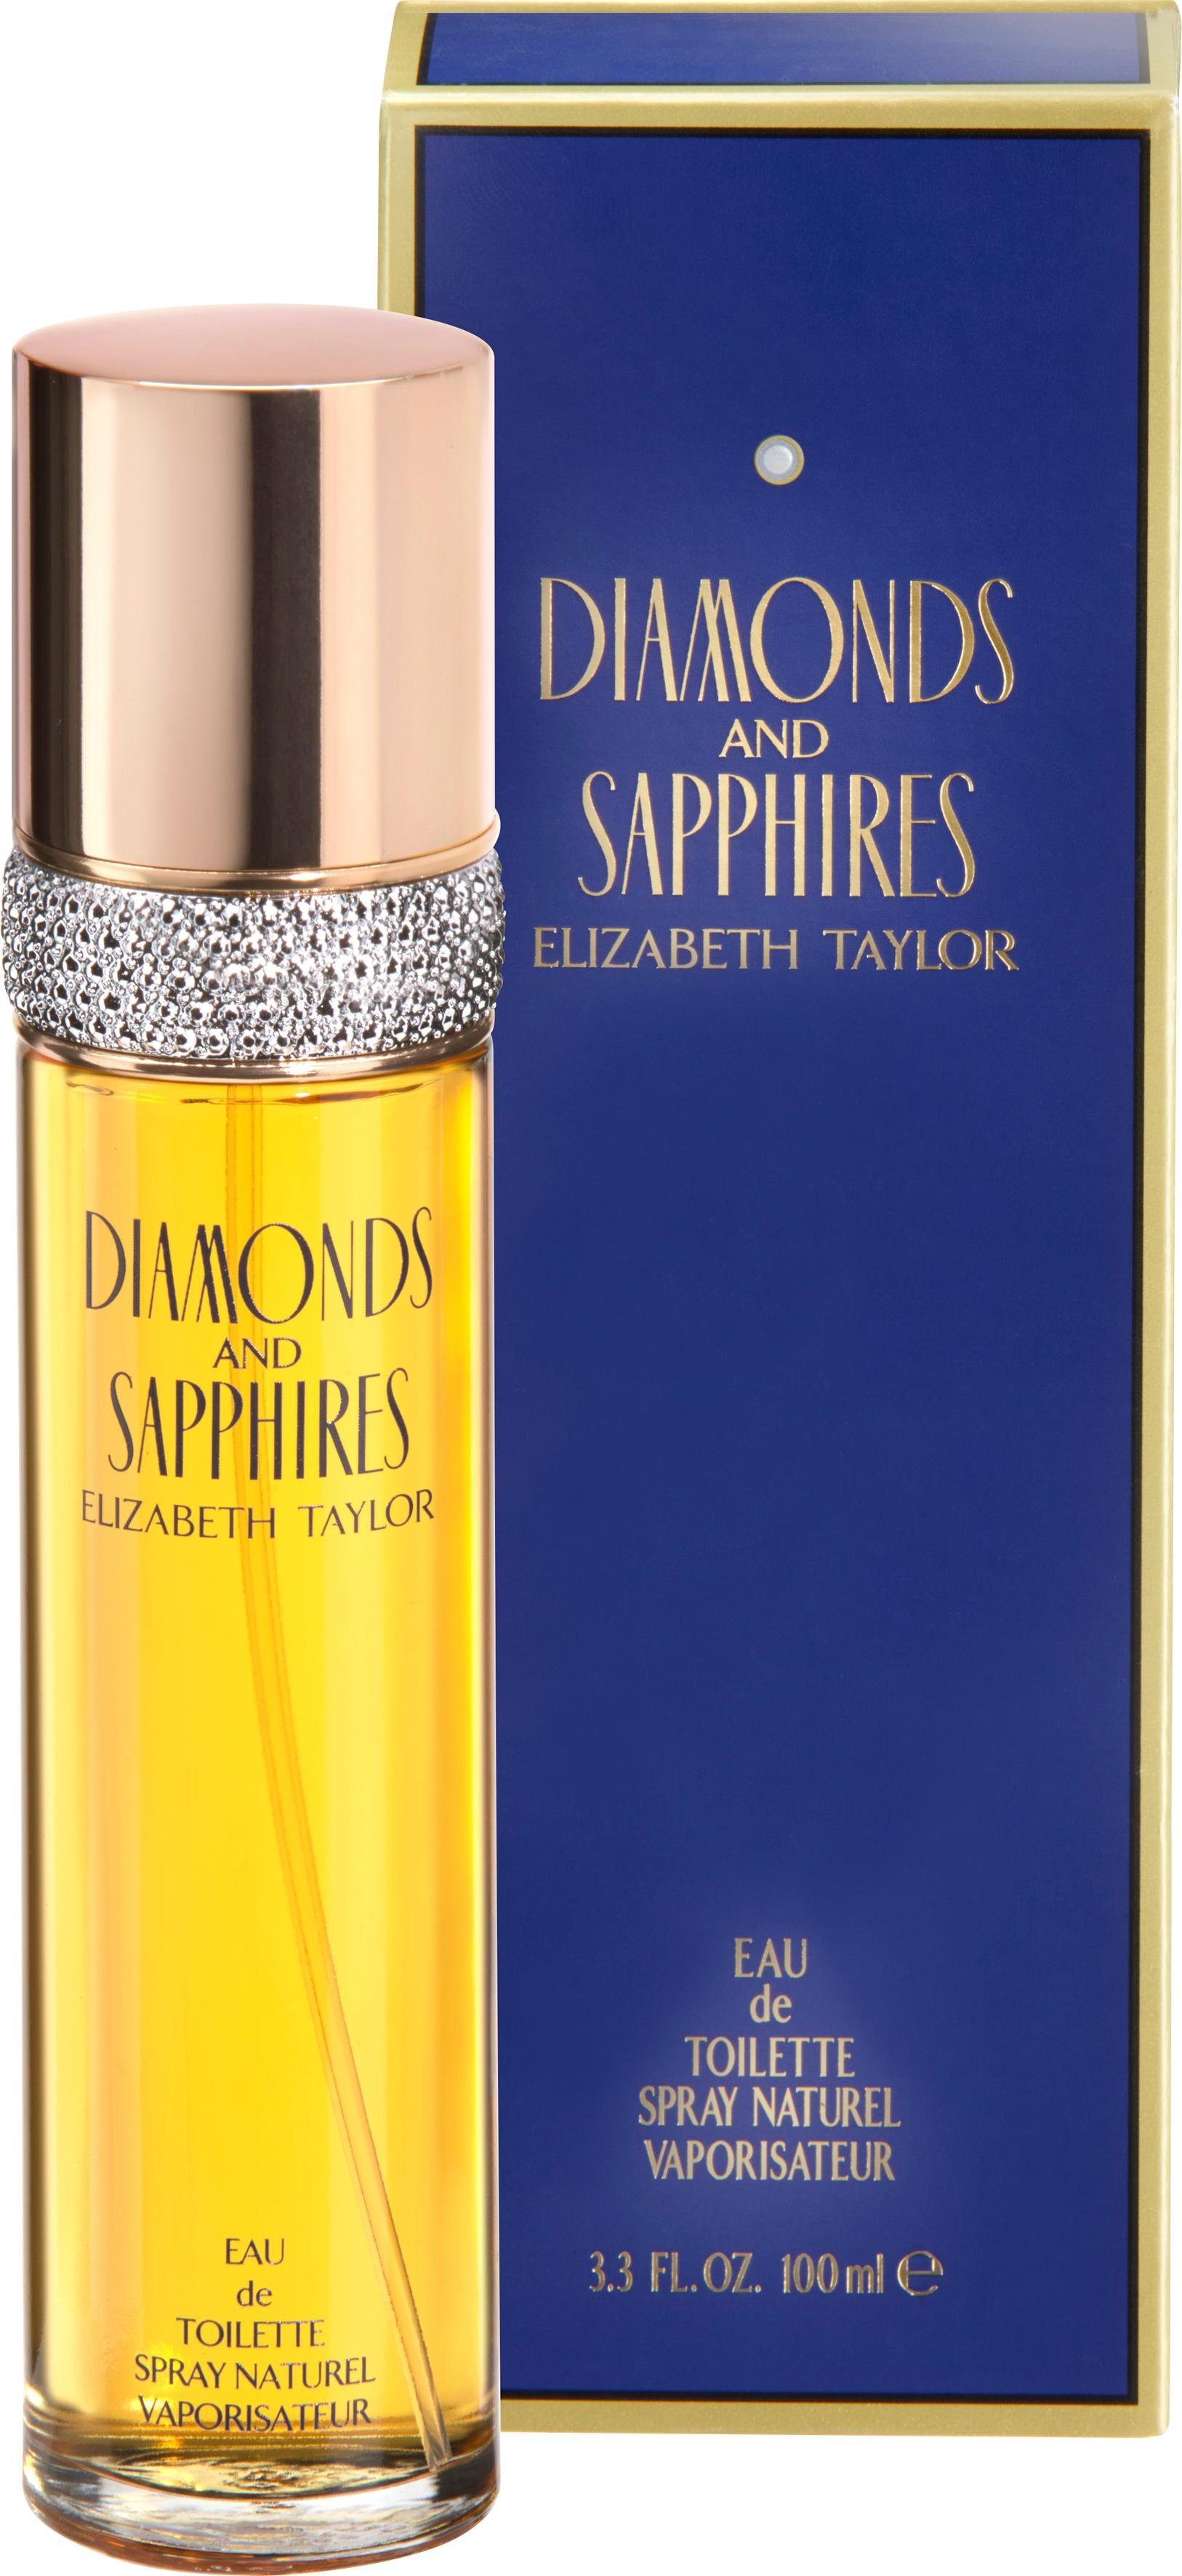 Sapphires & Toilette Elizabeth de Diamonds Eau Taylor